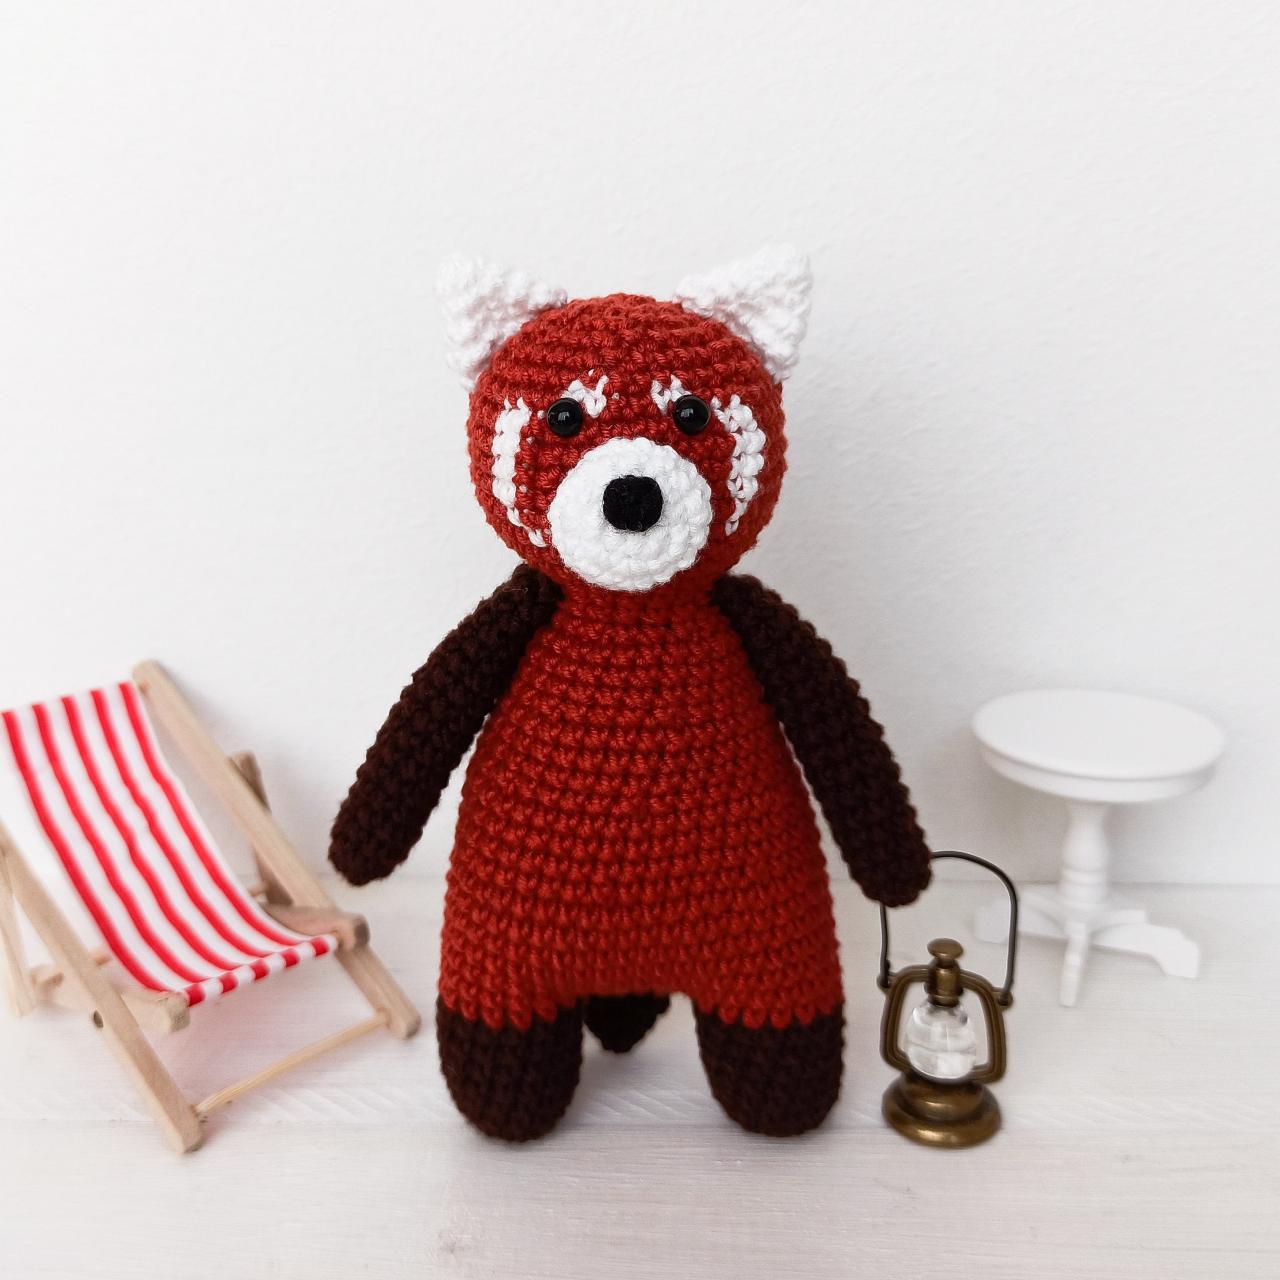 Amigurumi red panda Crochet red panda Plush red panda Baby soft toy Red panda toy Animal toy Stuffed red panda Plush toy Baby gift